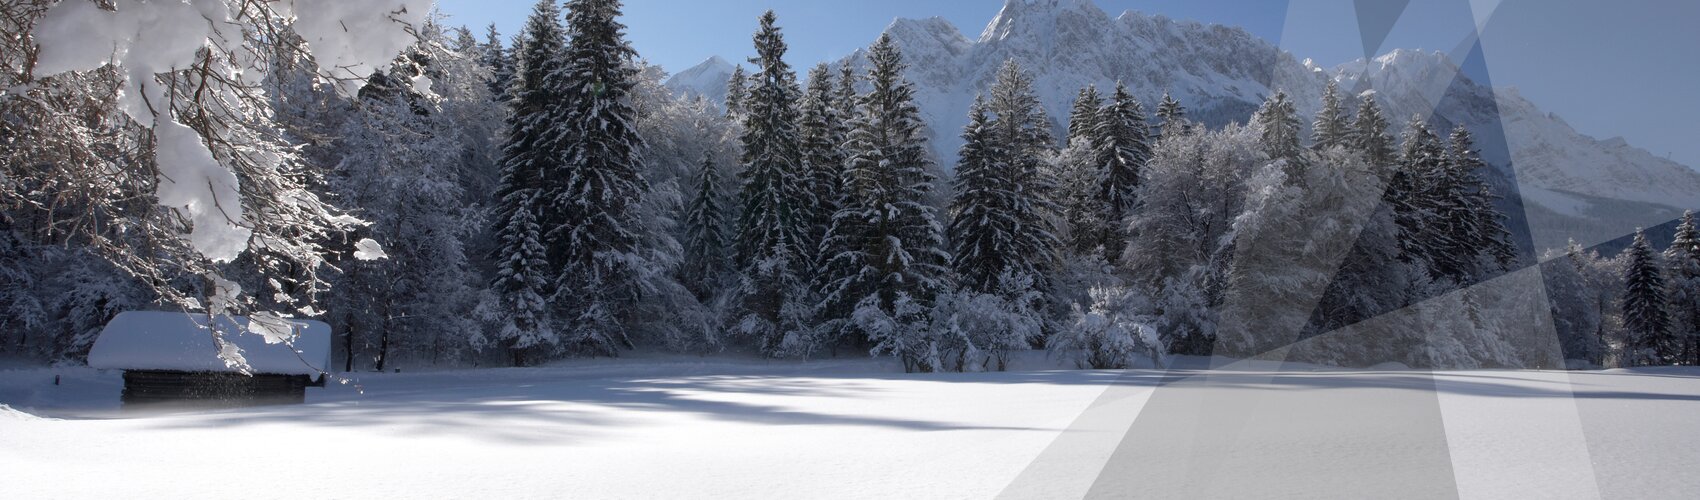 Winterpanorama | Grainau  | © Gilsdorf